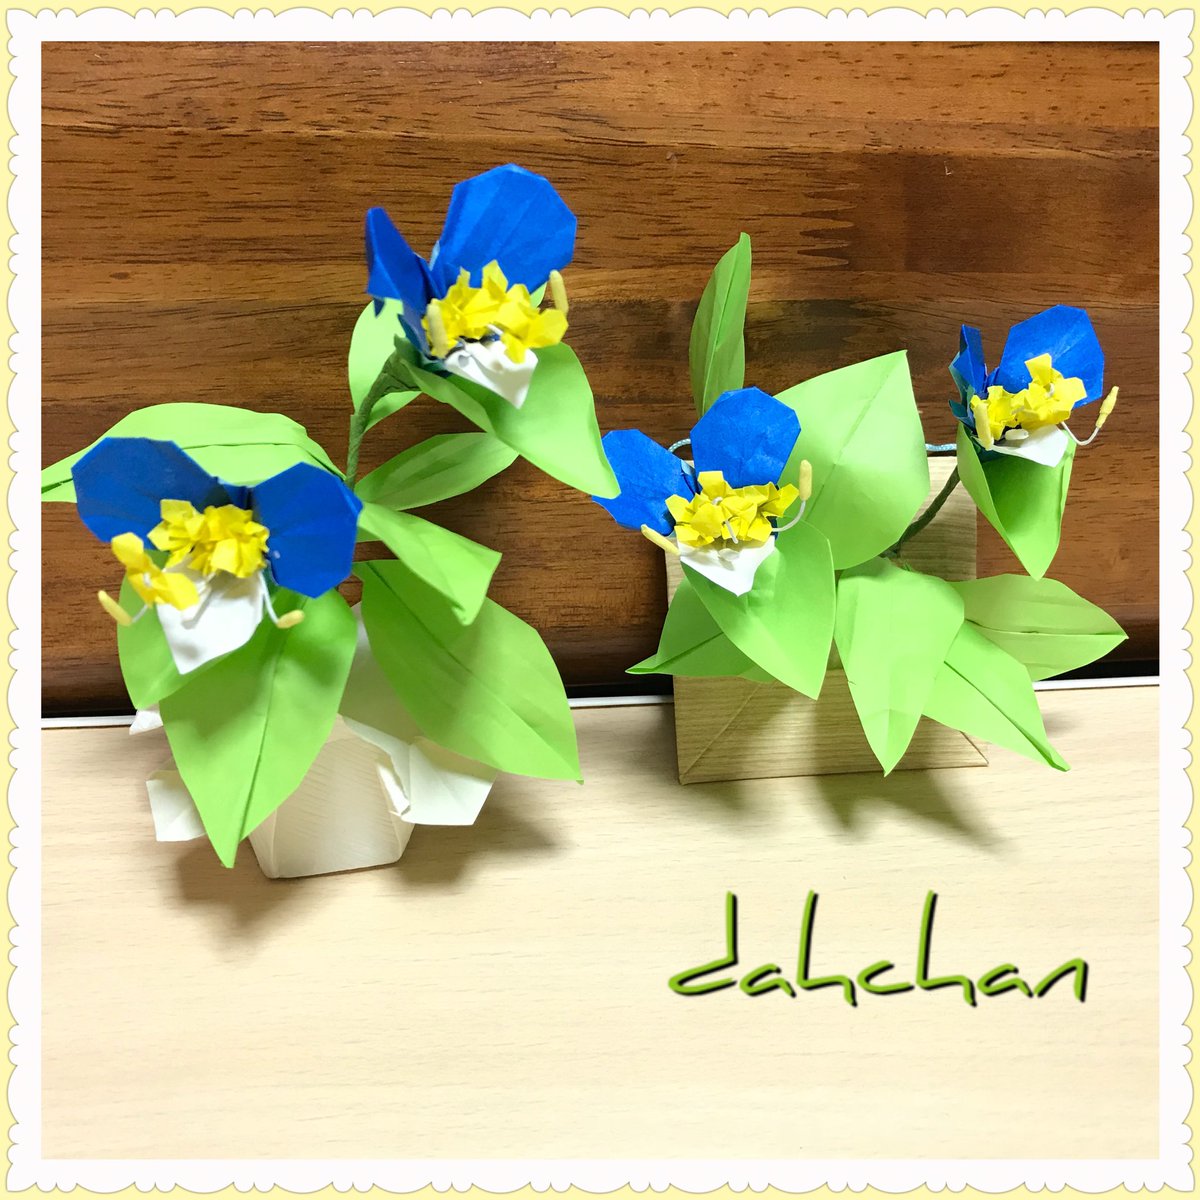 だ ちゃん Dahchan 創作折り紙作家どす みんなのsnsなんでも展示会 折り紙作品です 創作 いろいろ作ってますが花でまとめてみました 花は80くらい創作してますのでこちらのはほんの一部です 折り紙 パンジー ビオラ ツユクサ アネモネ